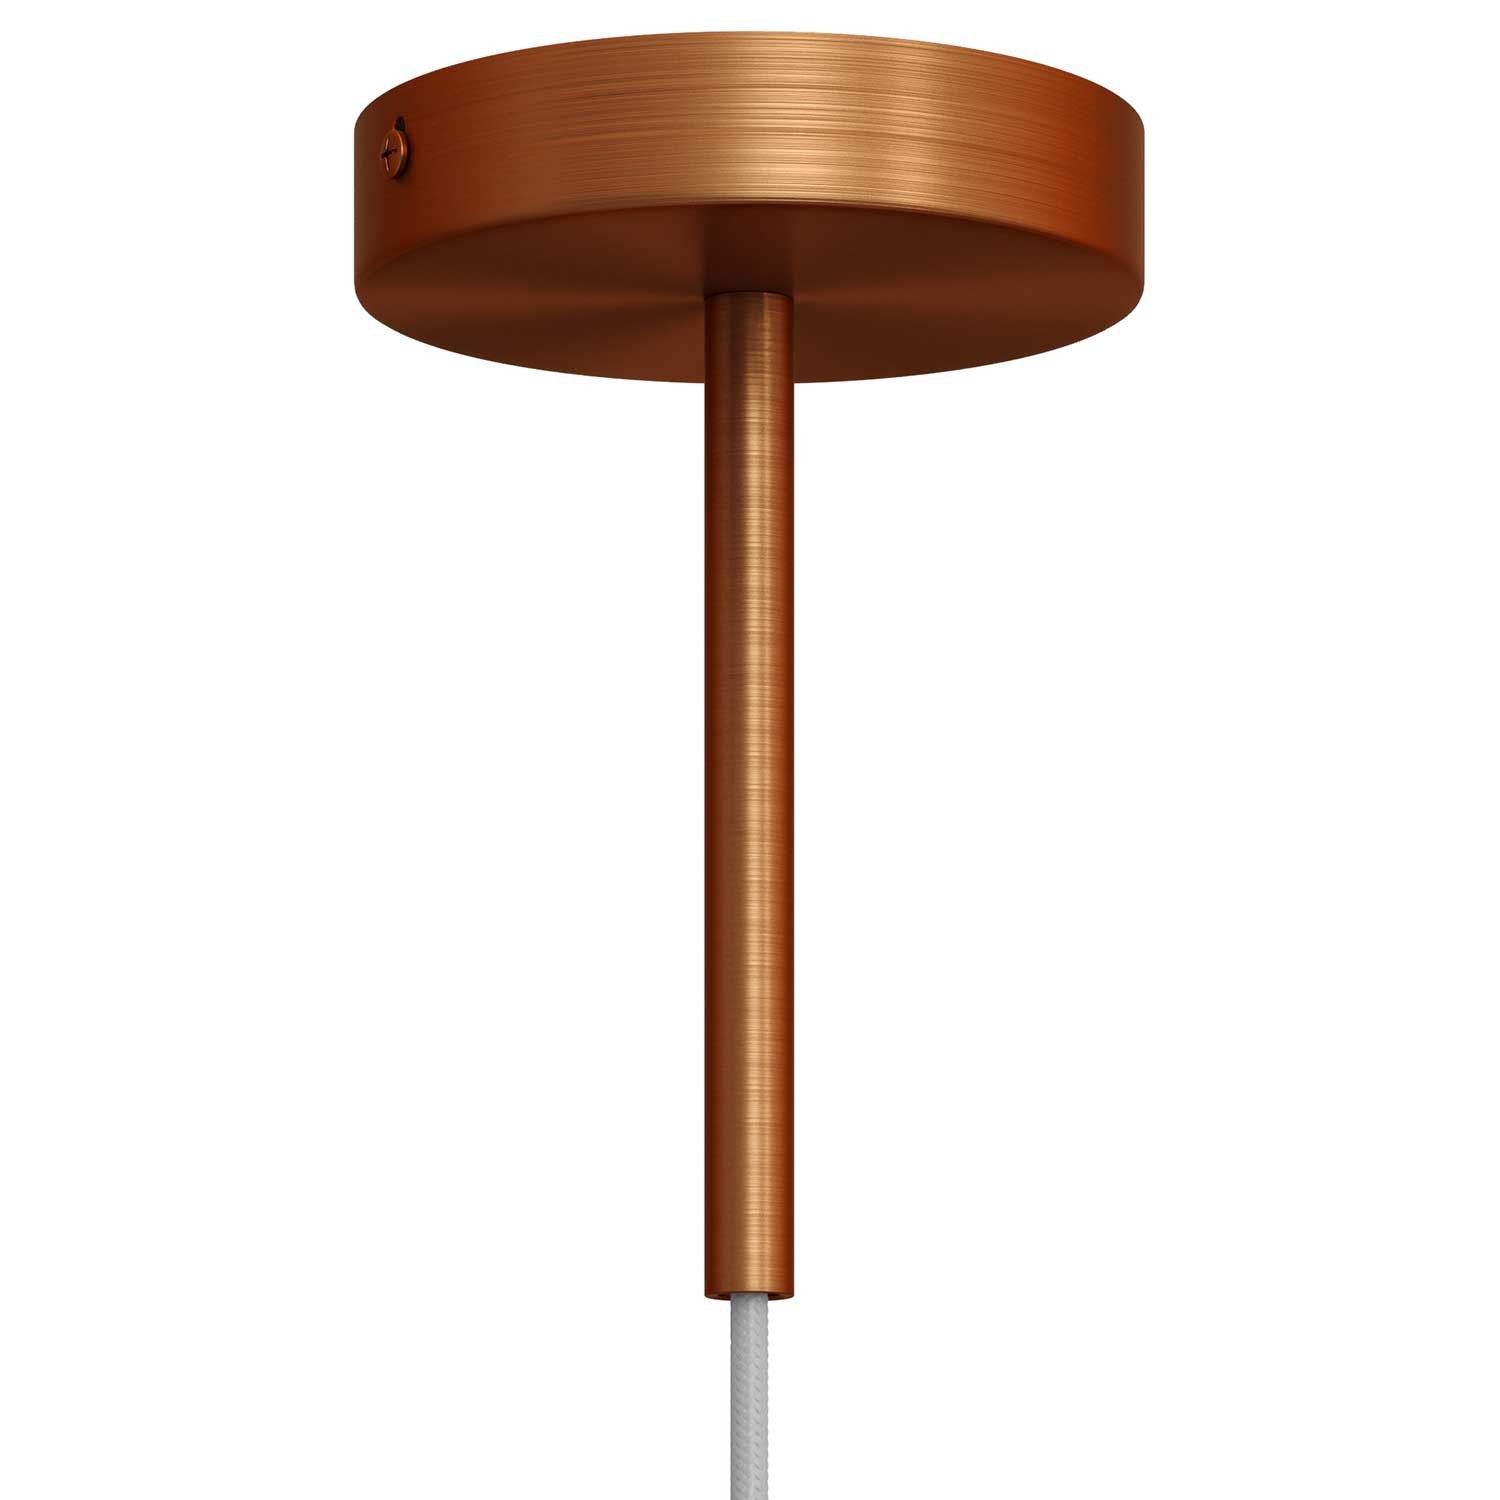 Serre-câble cylindrique en métal long 15 cm avec tige, écrou et rondelle